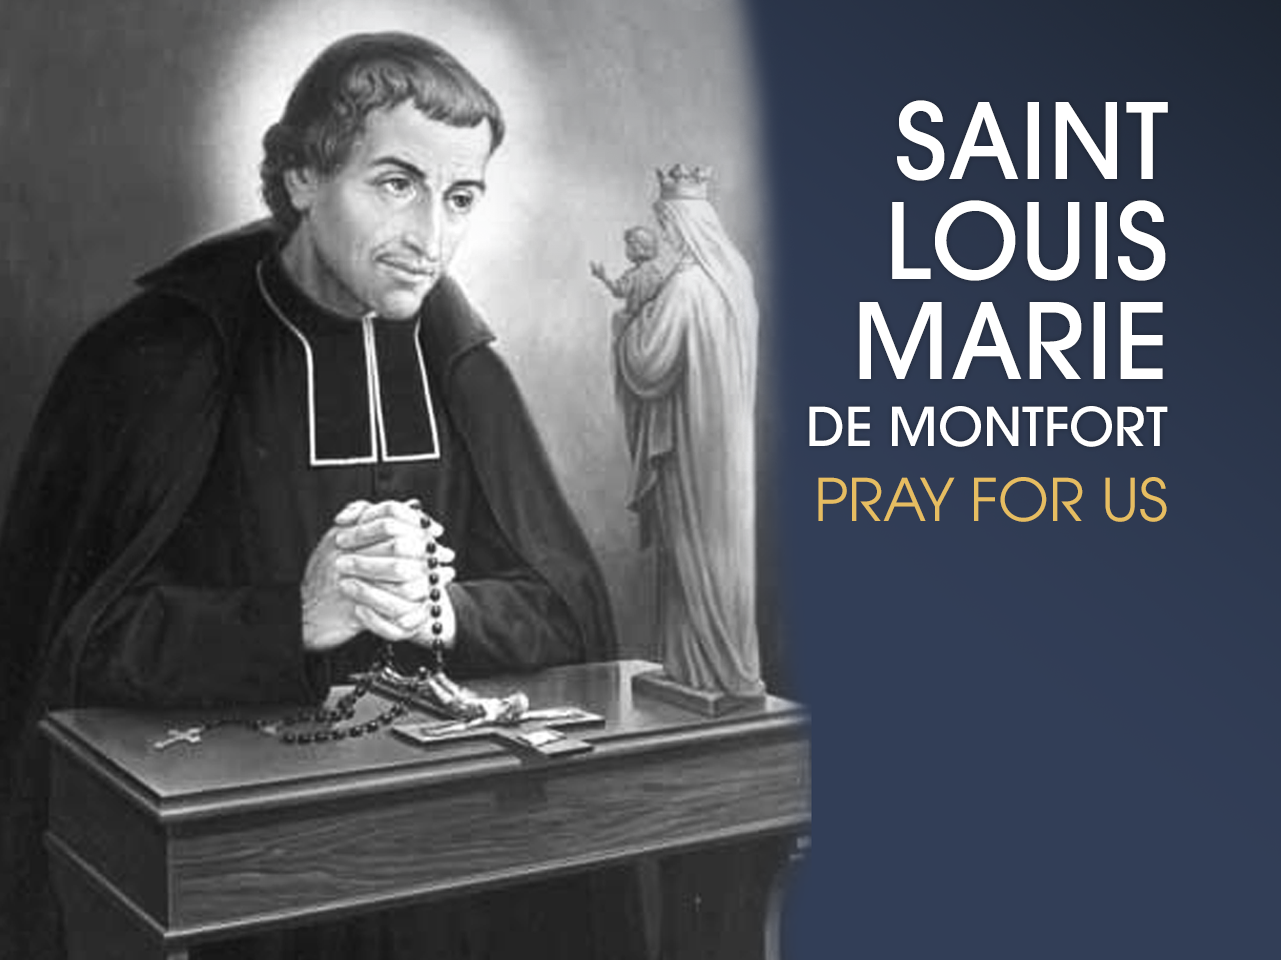 St. Louis De Montfort